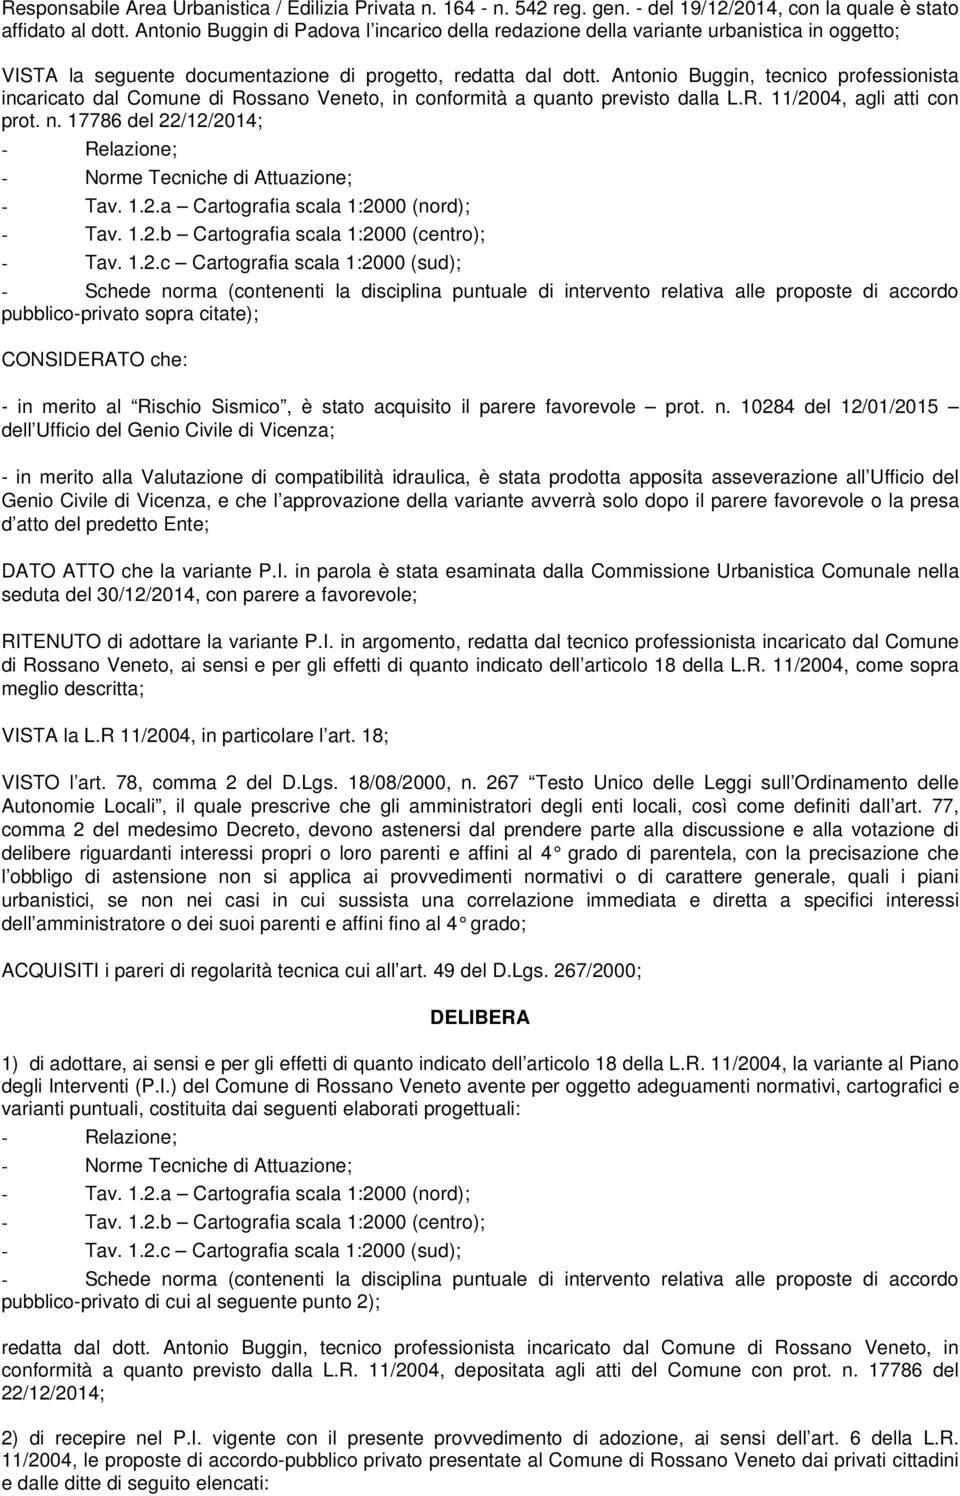 Antonio Buggin, tecnico professionista incaricato dal Comune di Rossano Veneto, in conformità a quanto previsto dalla L.R. 11/2004, agli atti con prot. n.